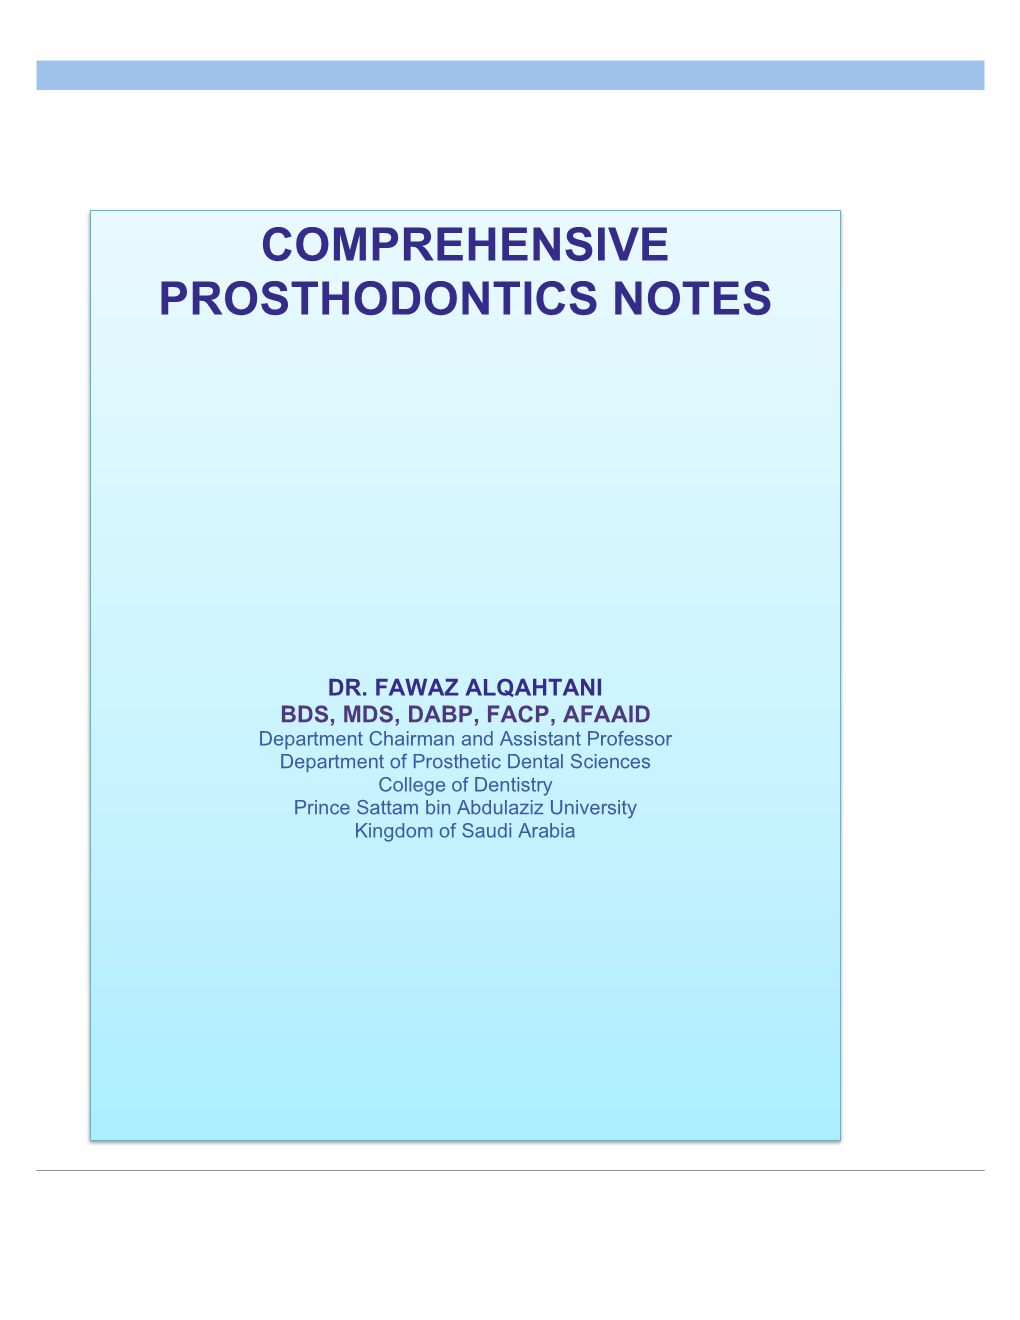 Comprehensive Prosthodontics Notes